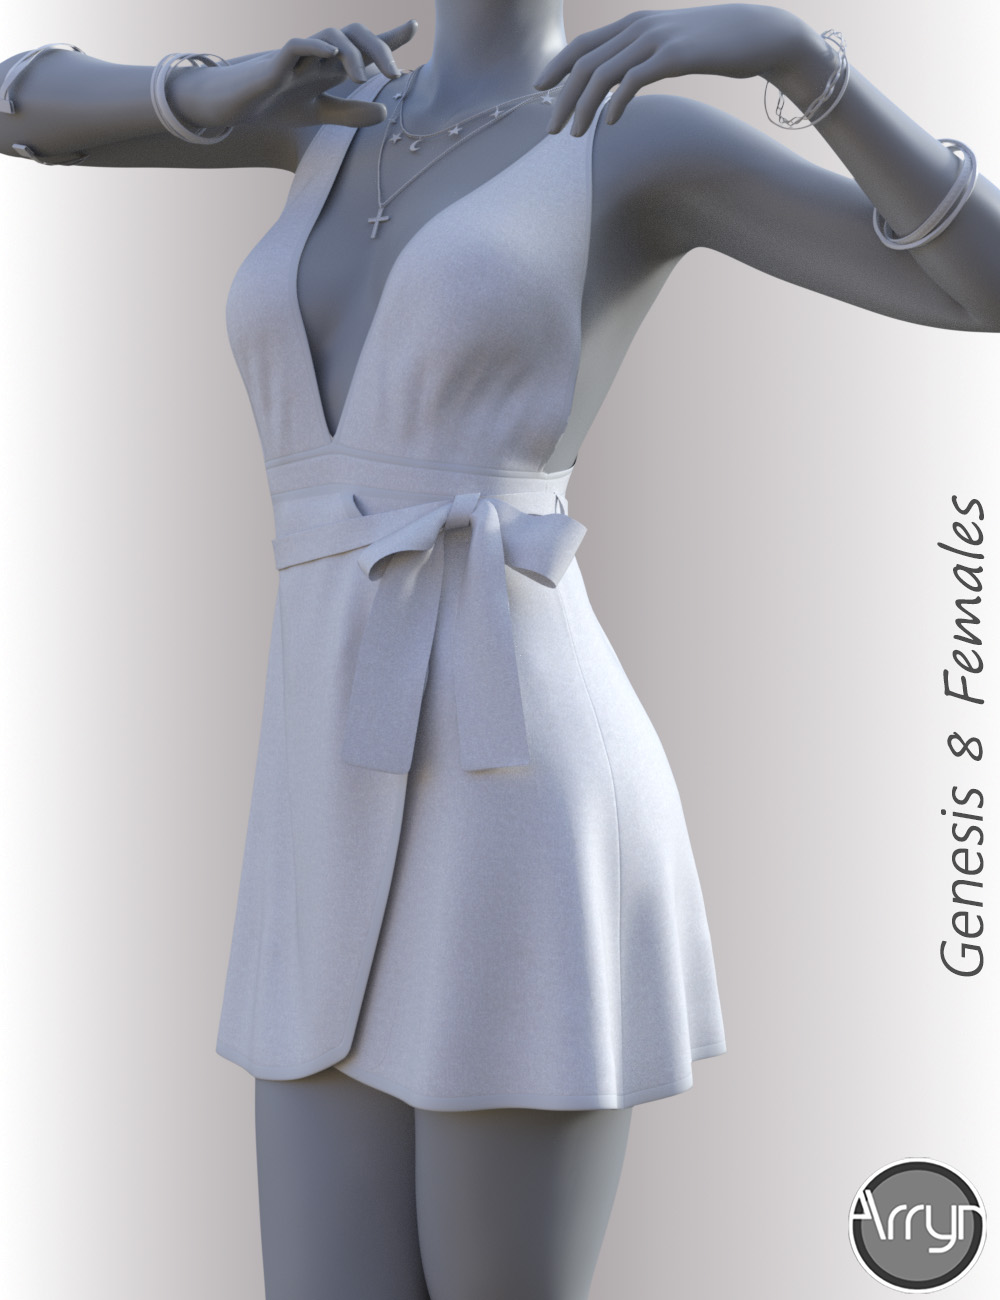 dForce Aimee Candy Dress for Genesis 8 Female(s) by: OnnelArryn, 3D Models by Daz 3D